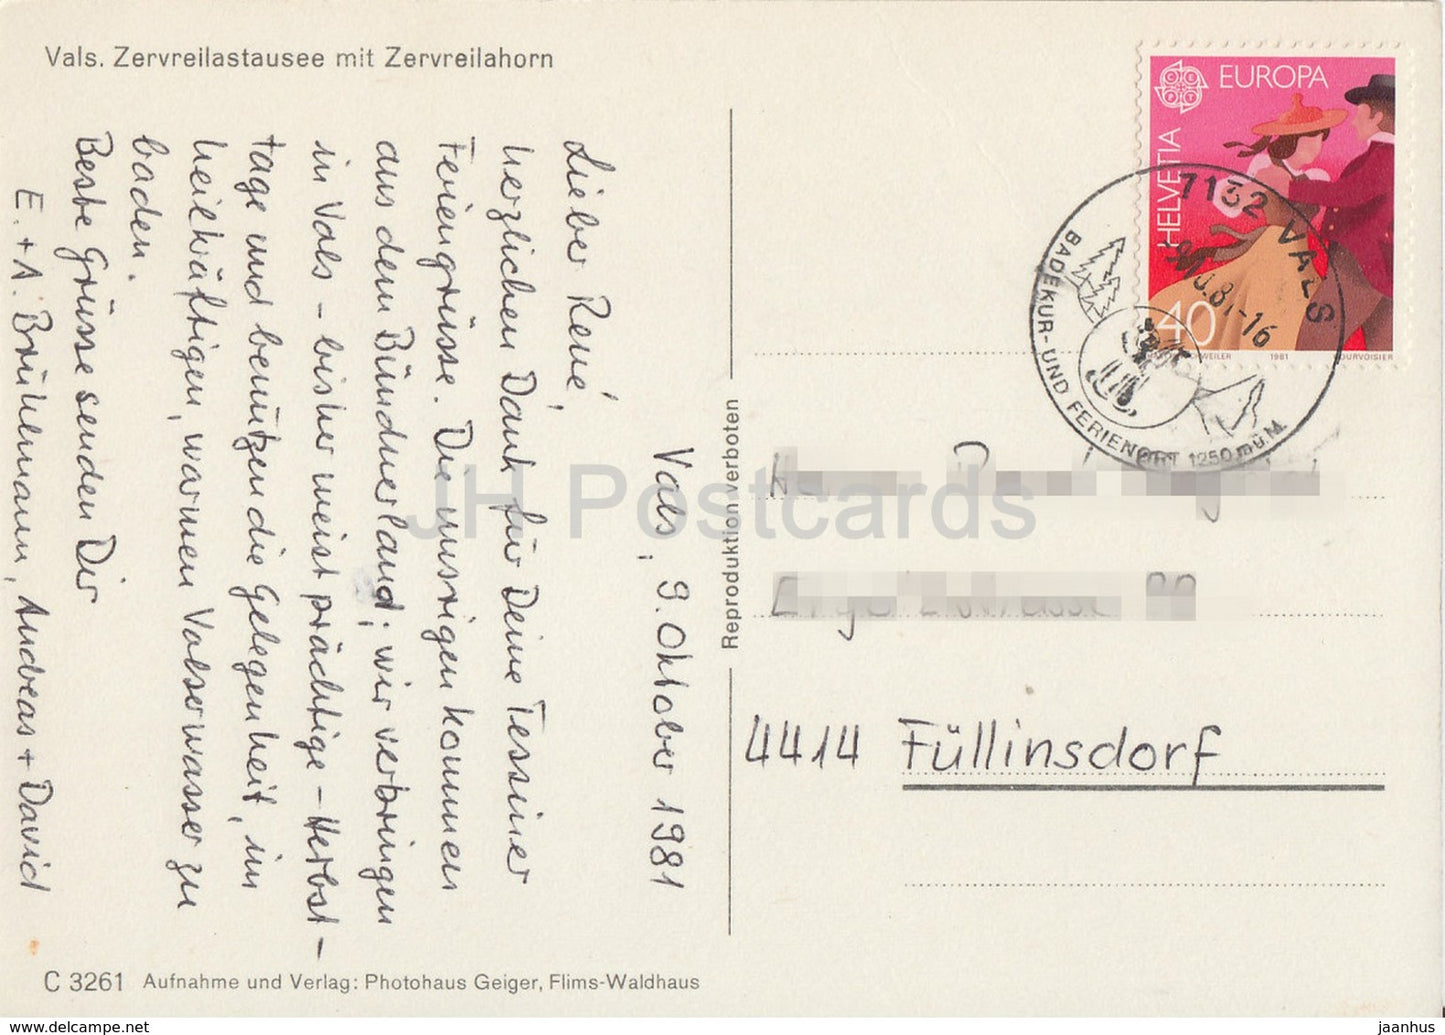 Vals - Zervreilastausee mit Zervreilahorn - 1981 - Suisse - occasion